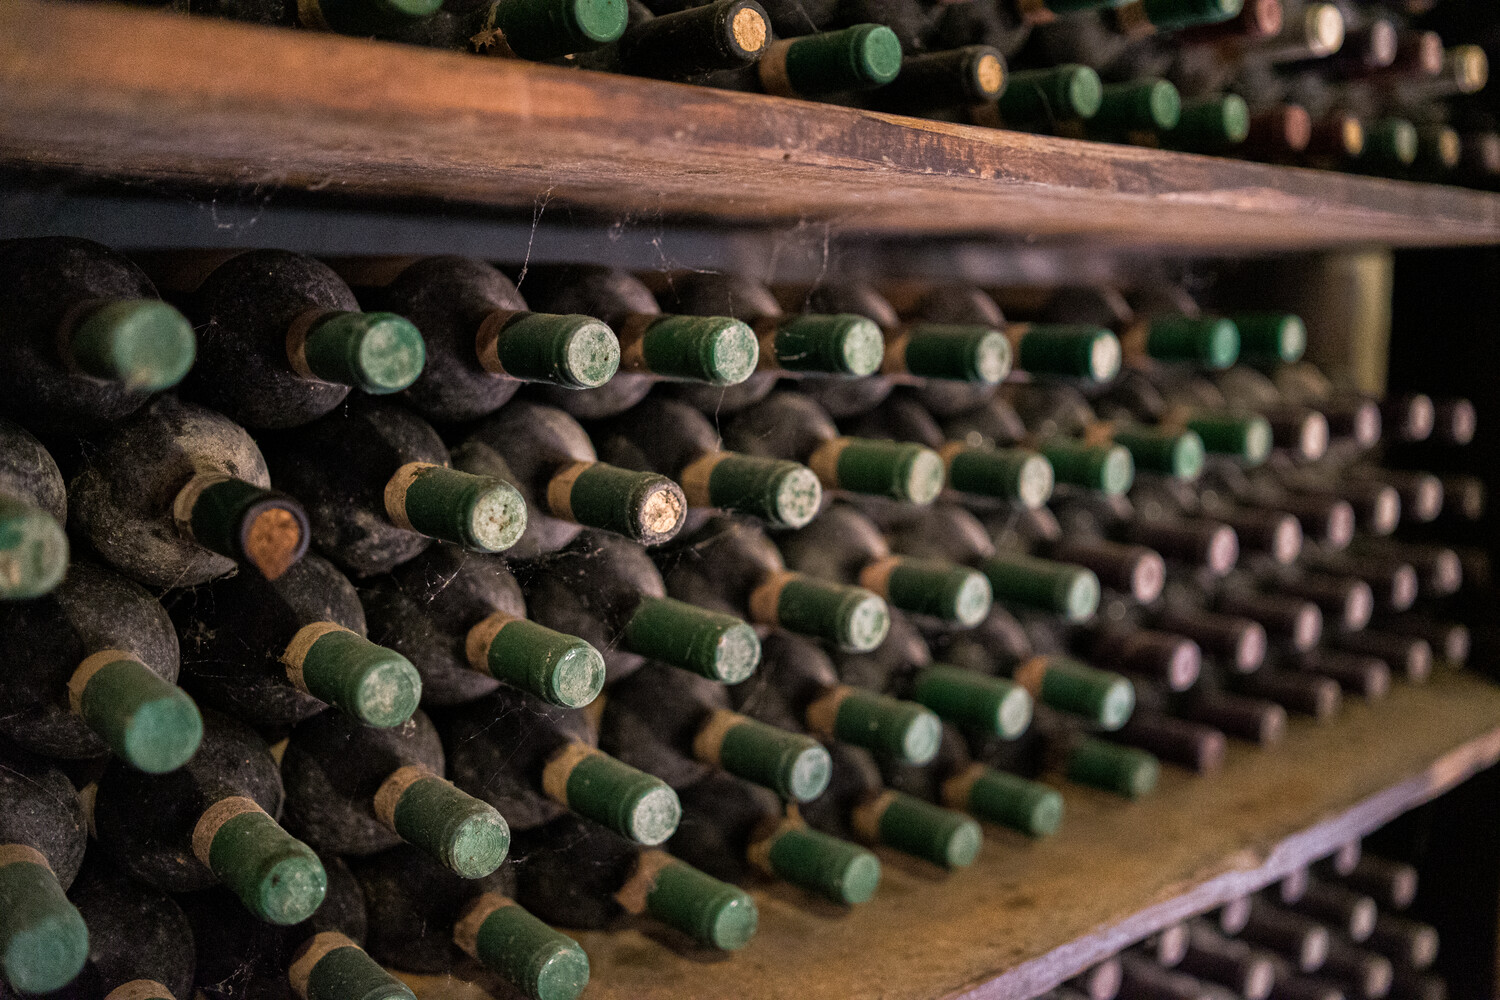 Stock ancien de bouteilles de vins. 